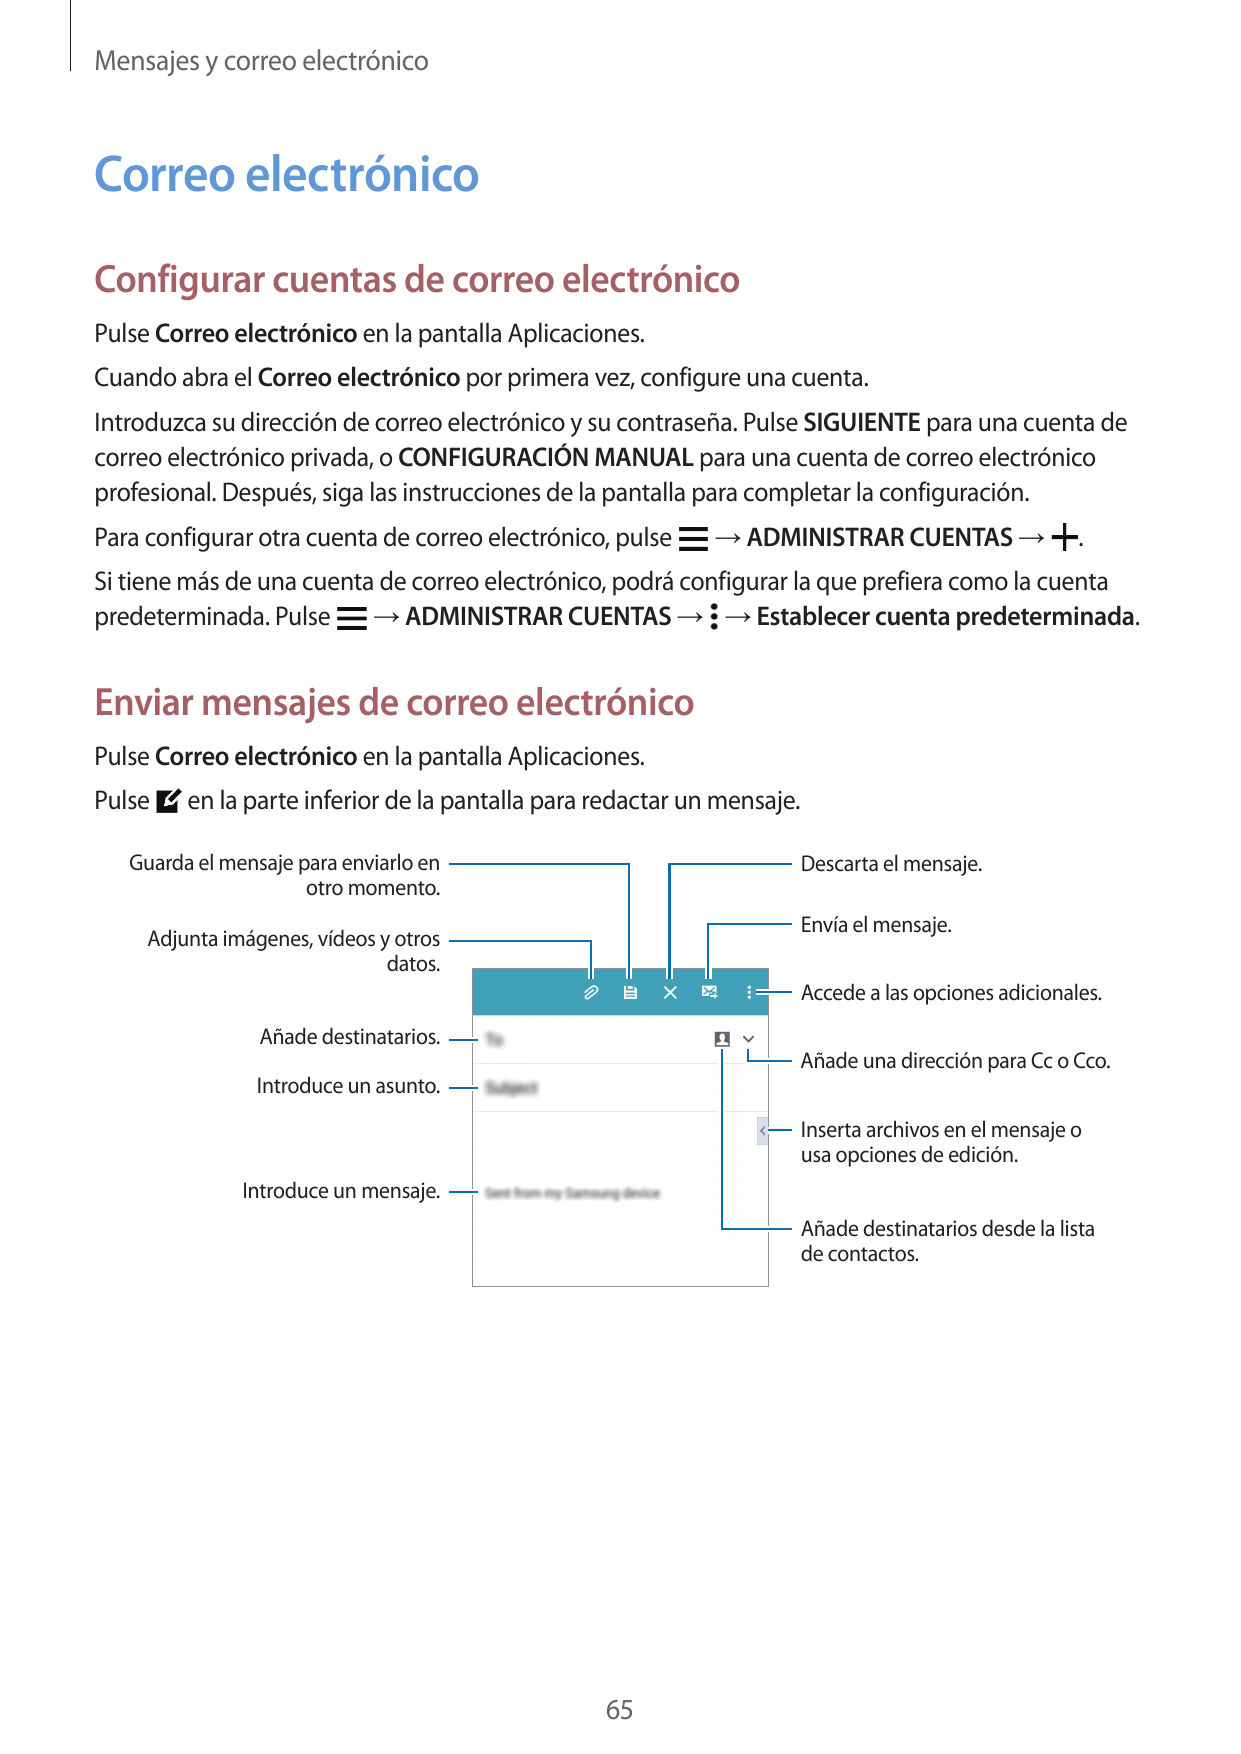 Mensajes y correo electrónicoCorreo electrónicoConfigurar cuentas de correo electrónicoPulse Correo electrónico en la pantalla A